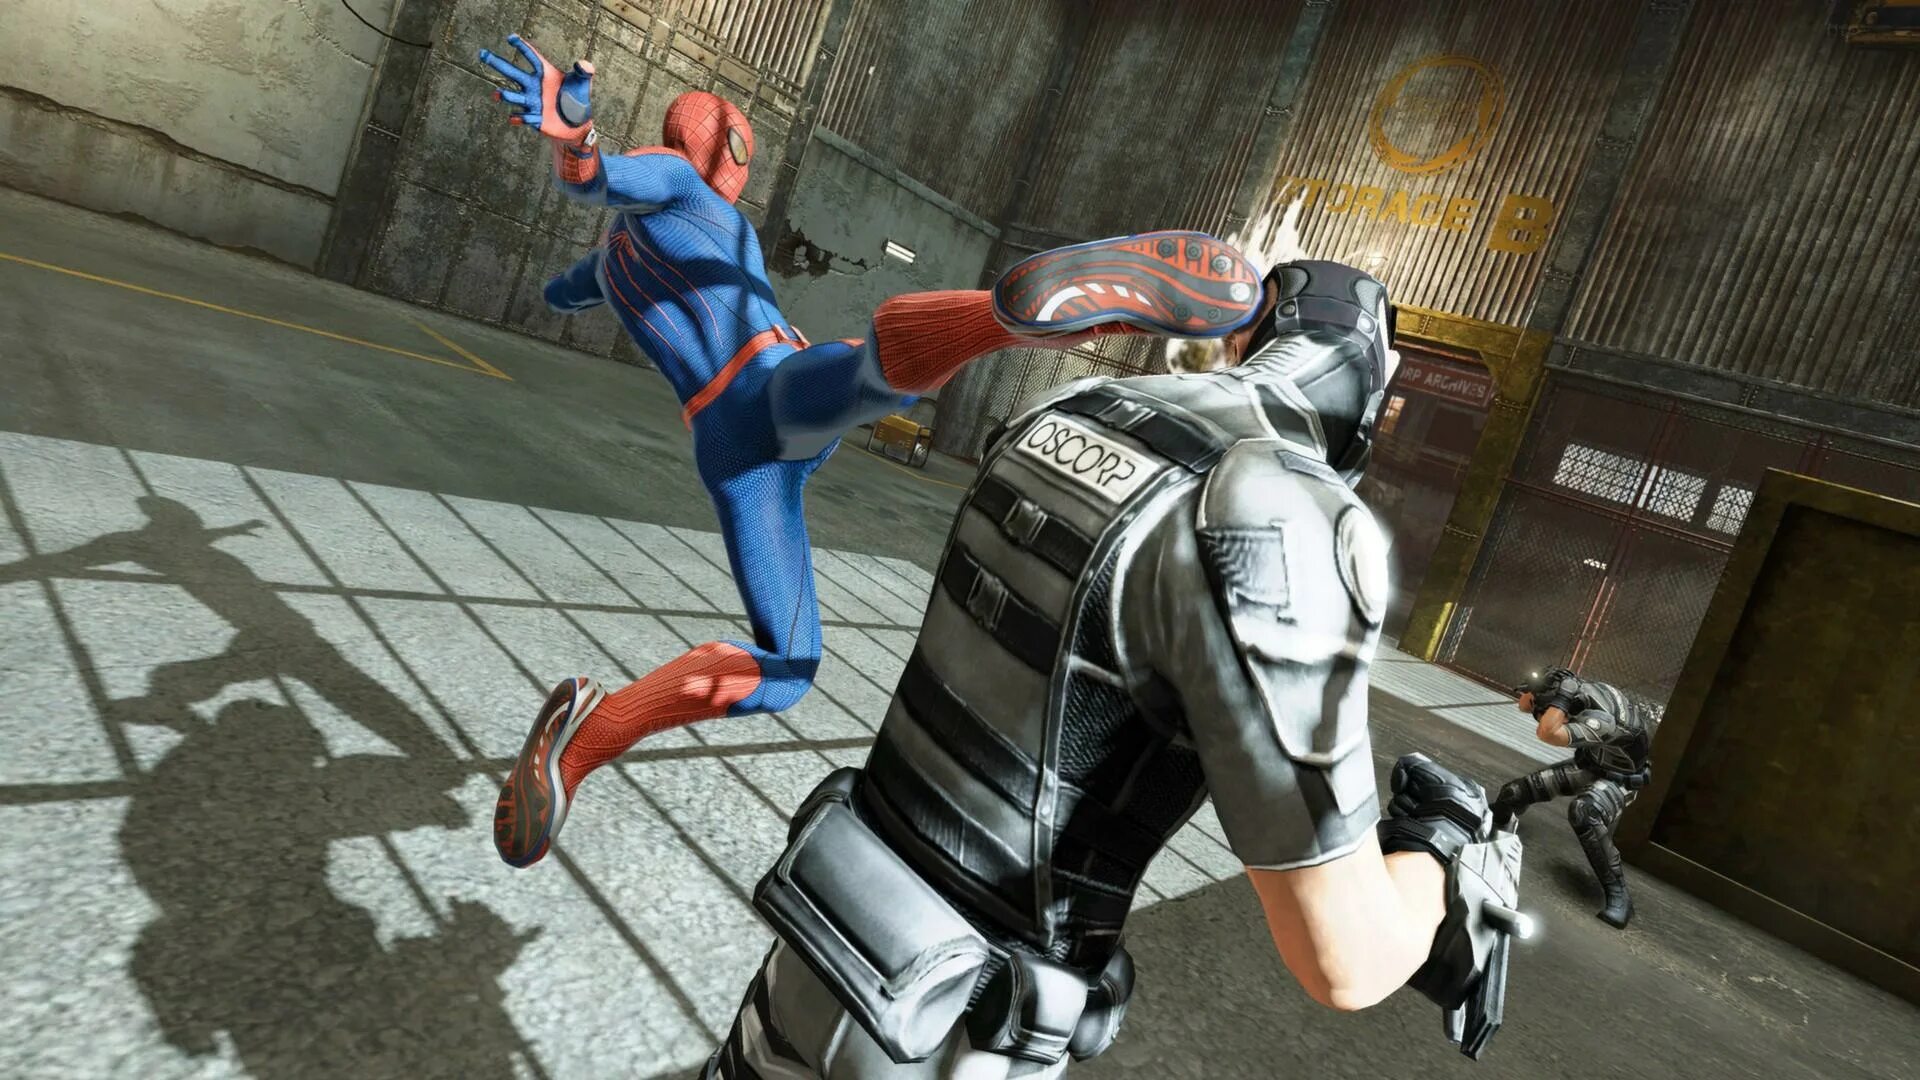 The amazing Spider-man игра. The amazing Spider-man 1 игра. Новый человек паук игра 2012. Человек паук амазинг игра. Игра стать пауком